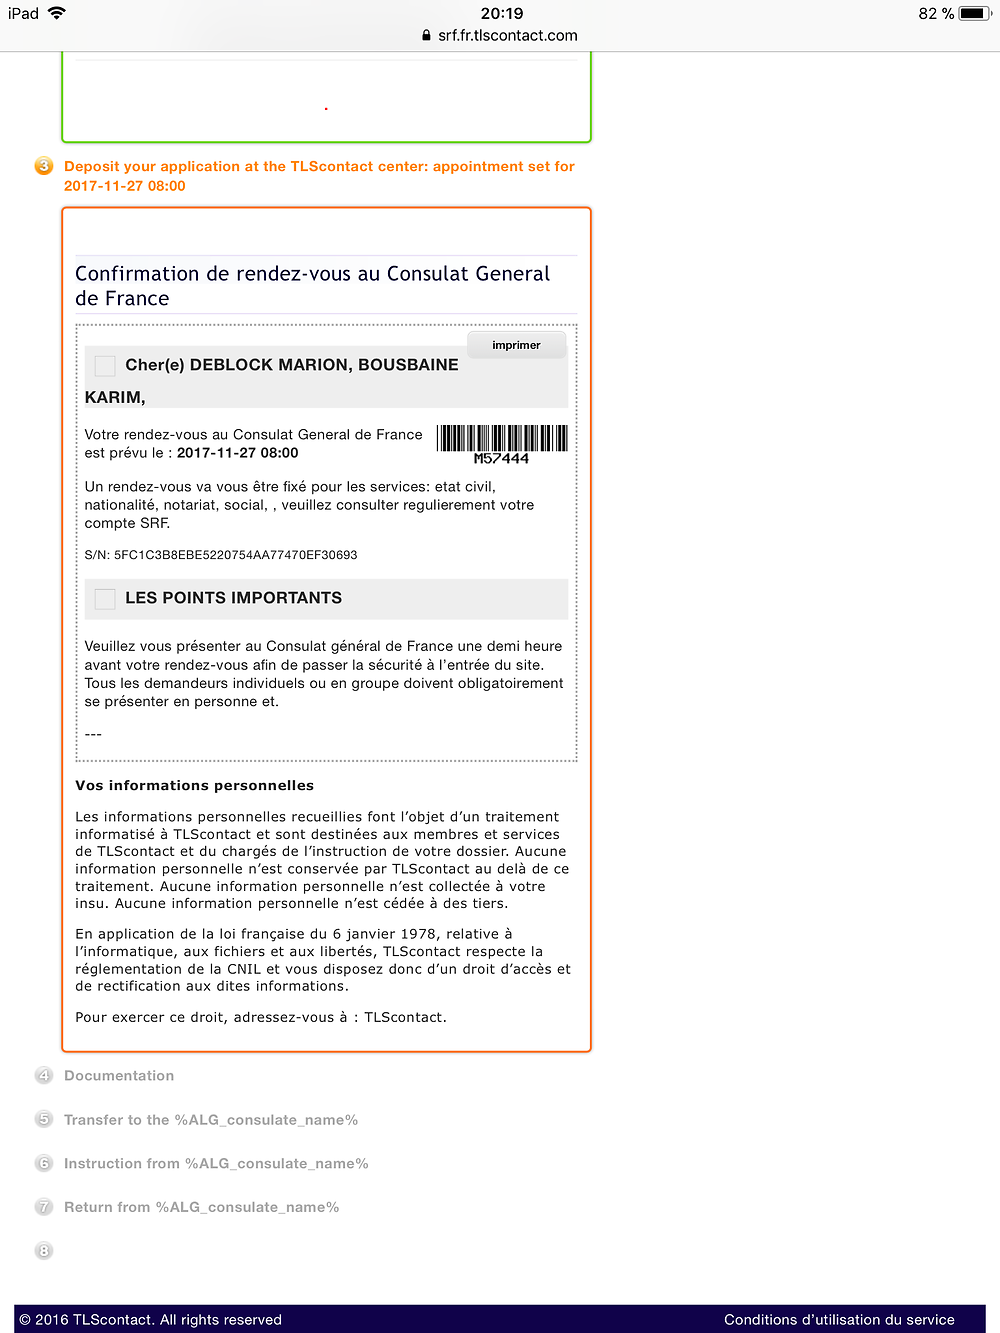 Re: Certificat de capacité à mariage (ccam) - formalités pour se marier en Algerie - Pitchoune36